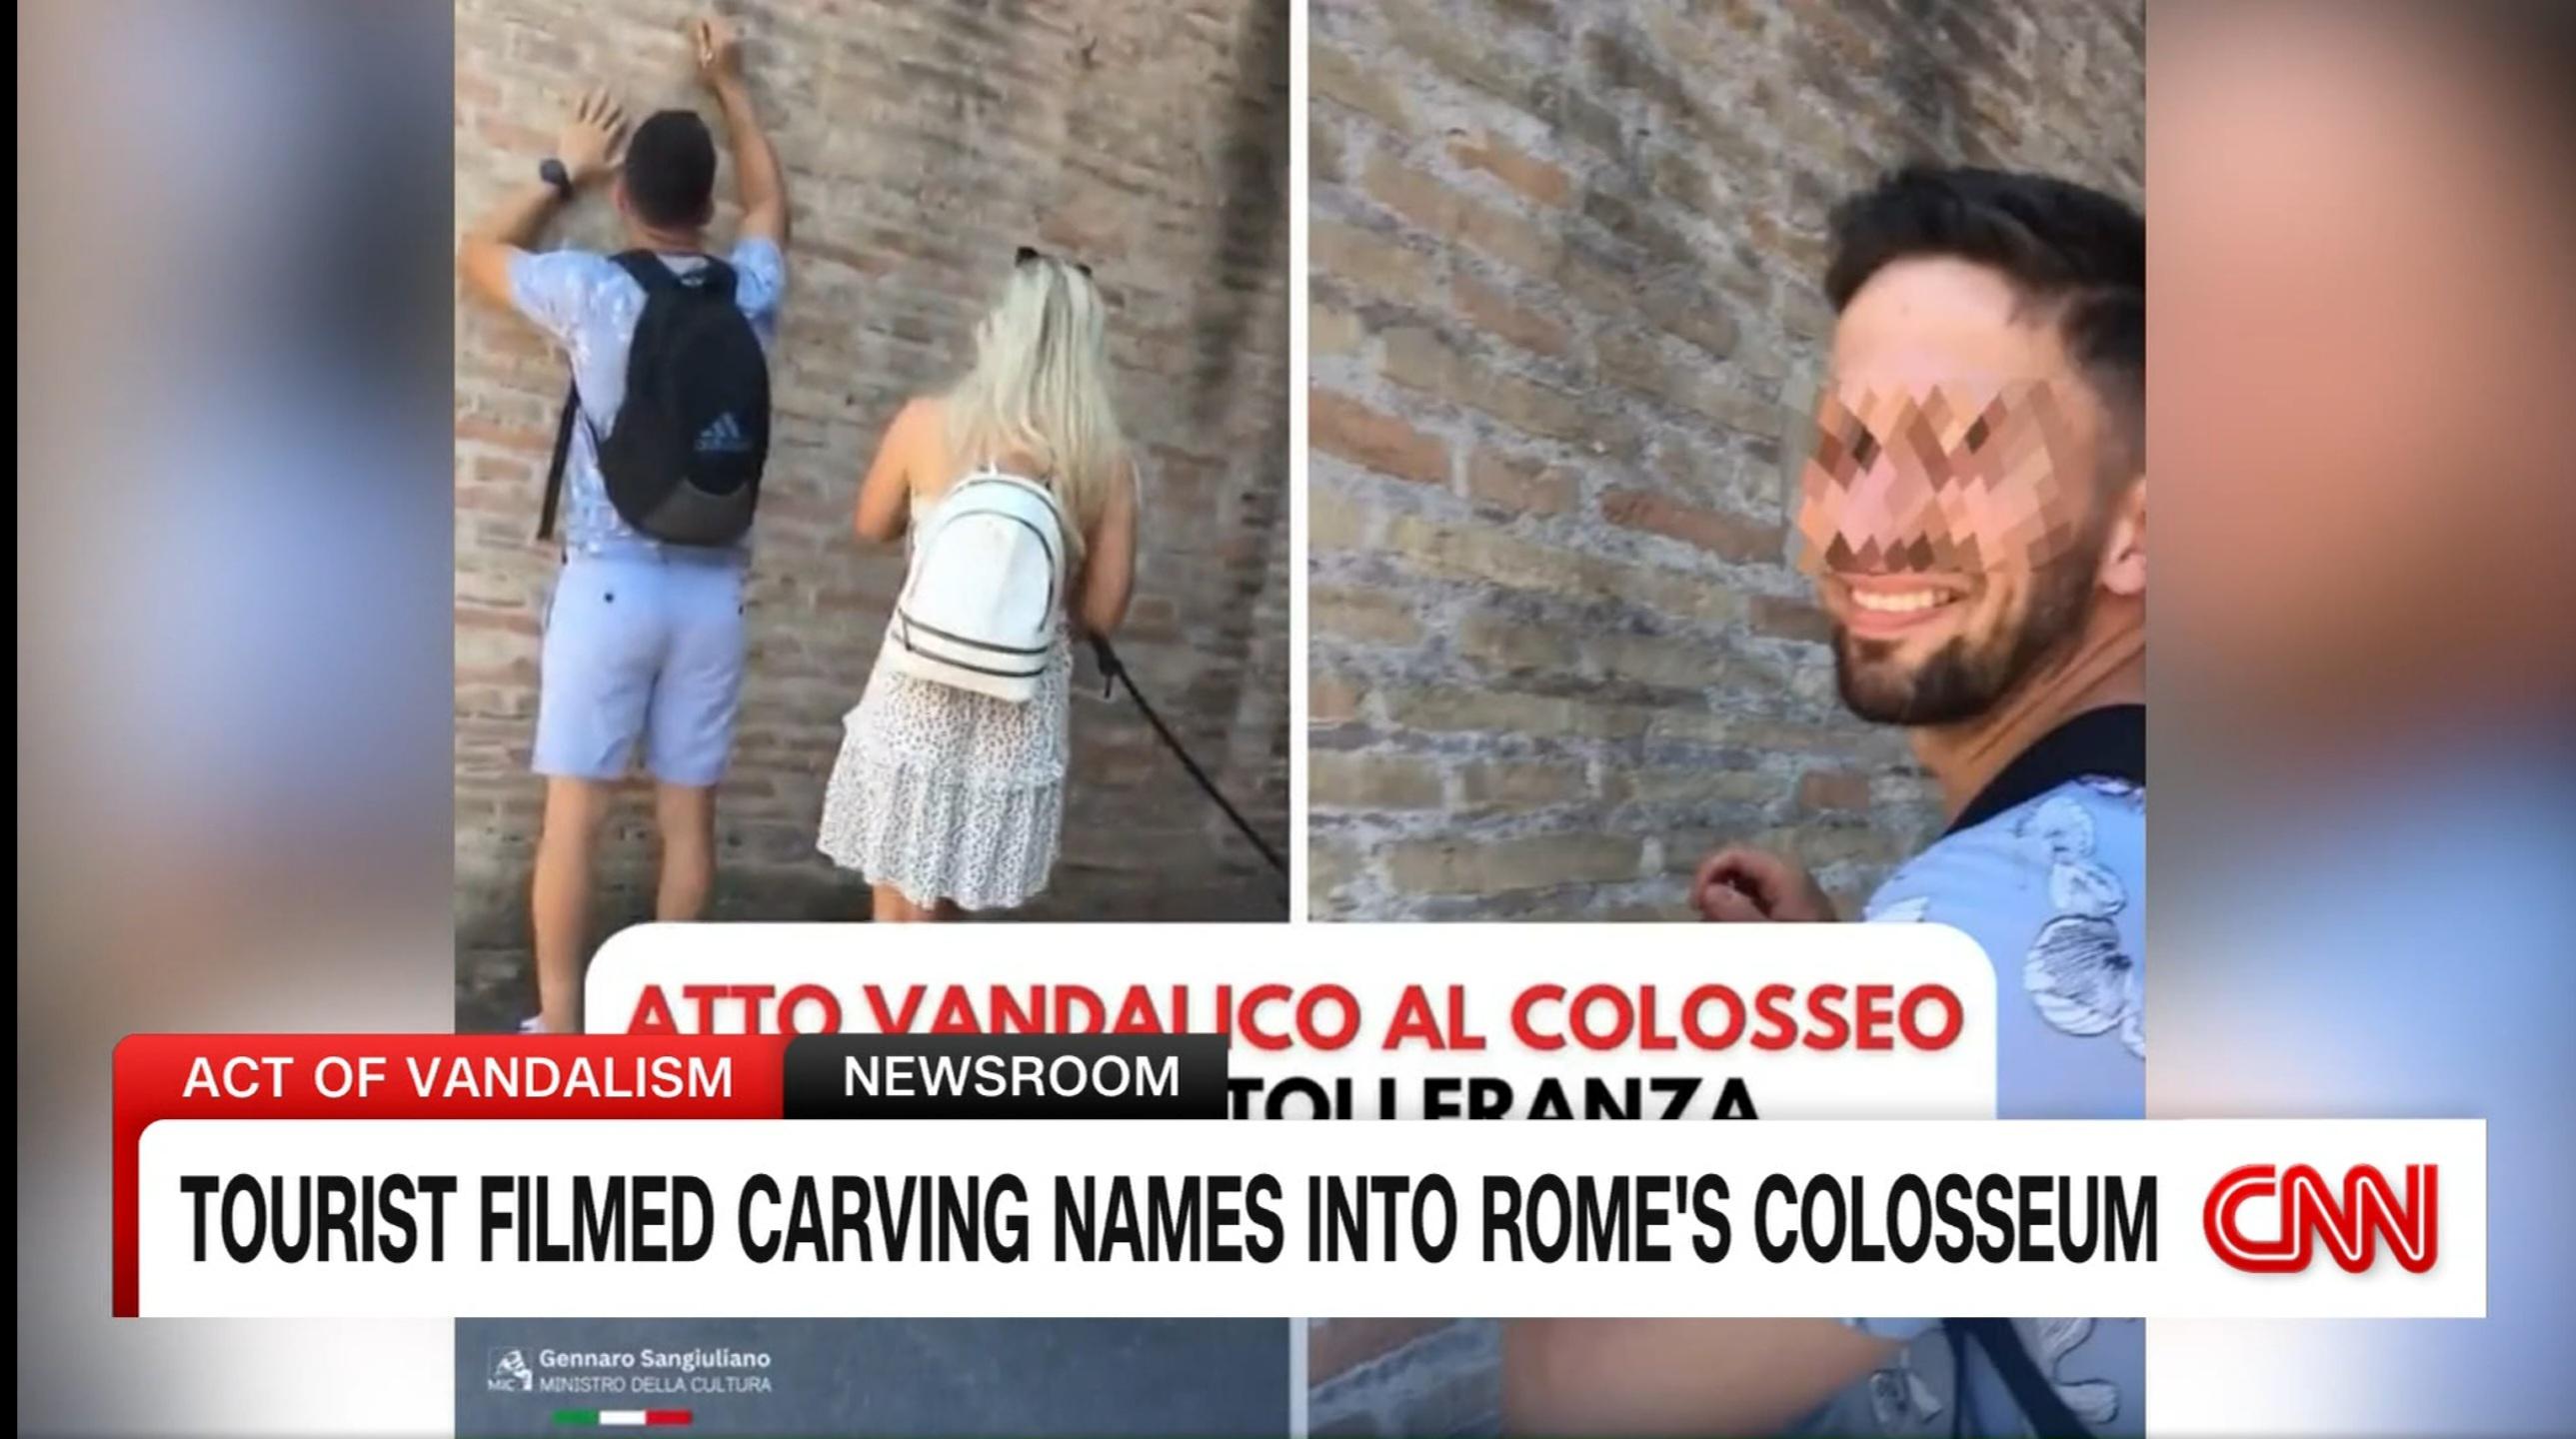 reddit facepalm - Atto Vandalico Al Colosseo Act Of Vandalism Newsroom Tolleranza Tourist Filmed Carving Names Into Rome'S Colosseum Cnn Gennaro Sangiuliano Ministro Della Cultura